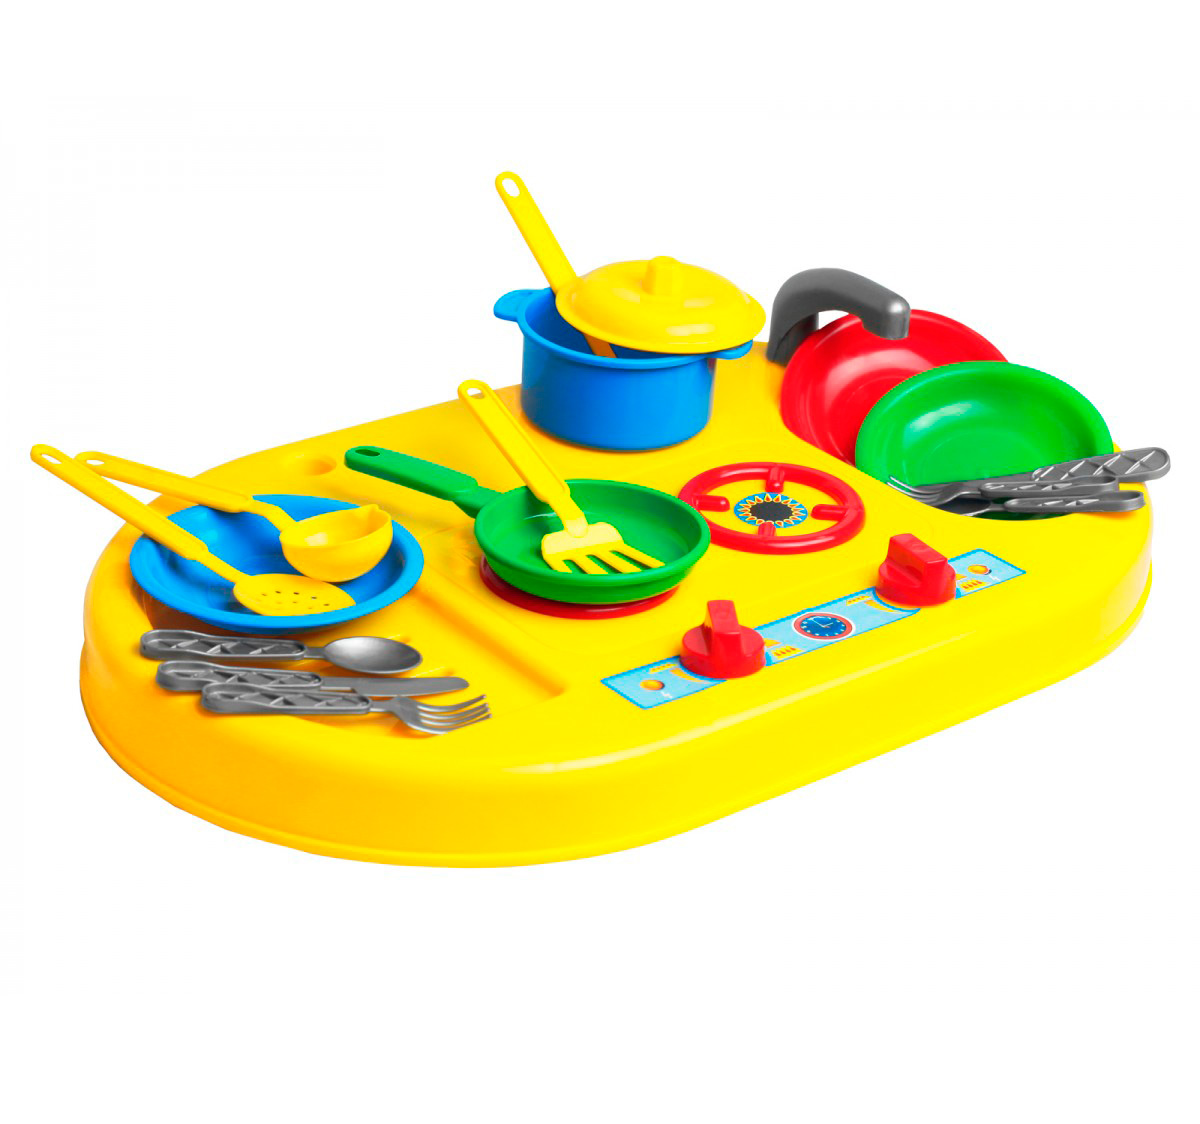 Детская игрушечная плита с посудкой